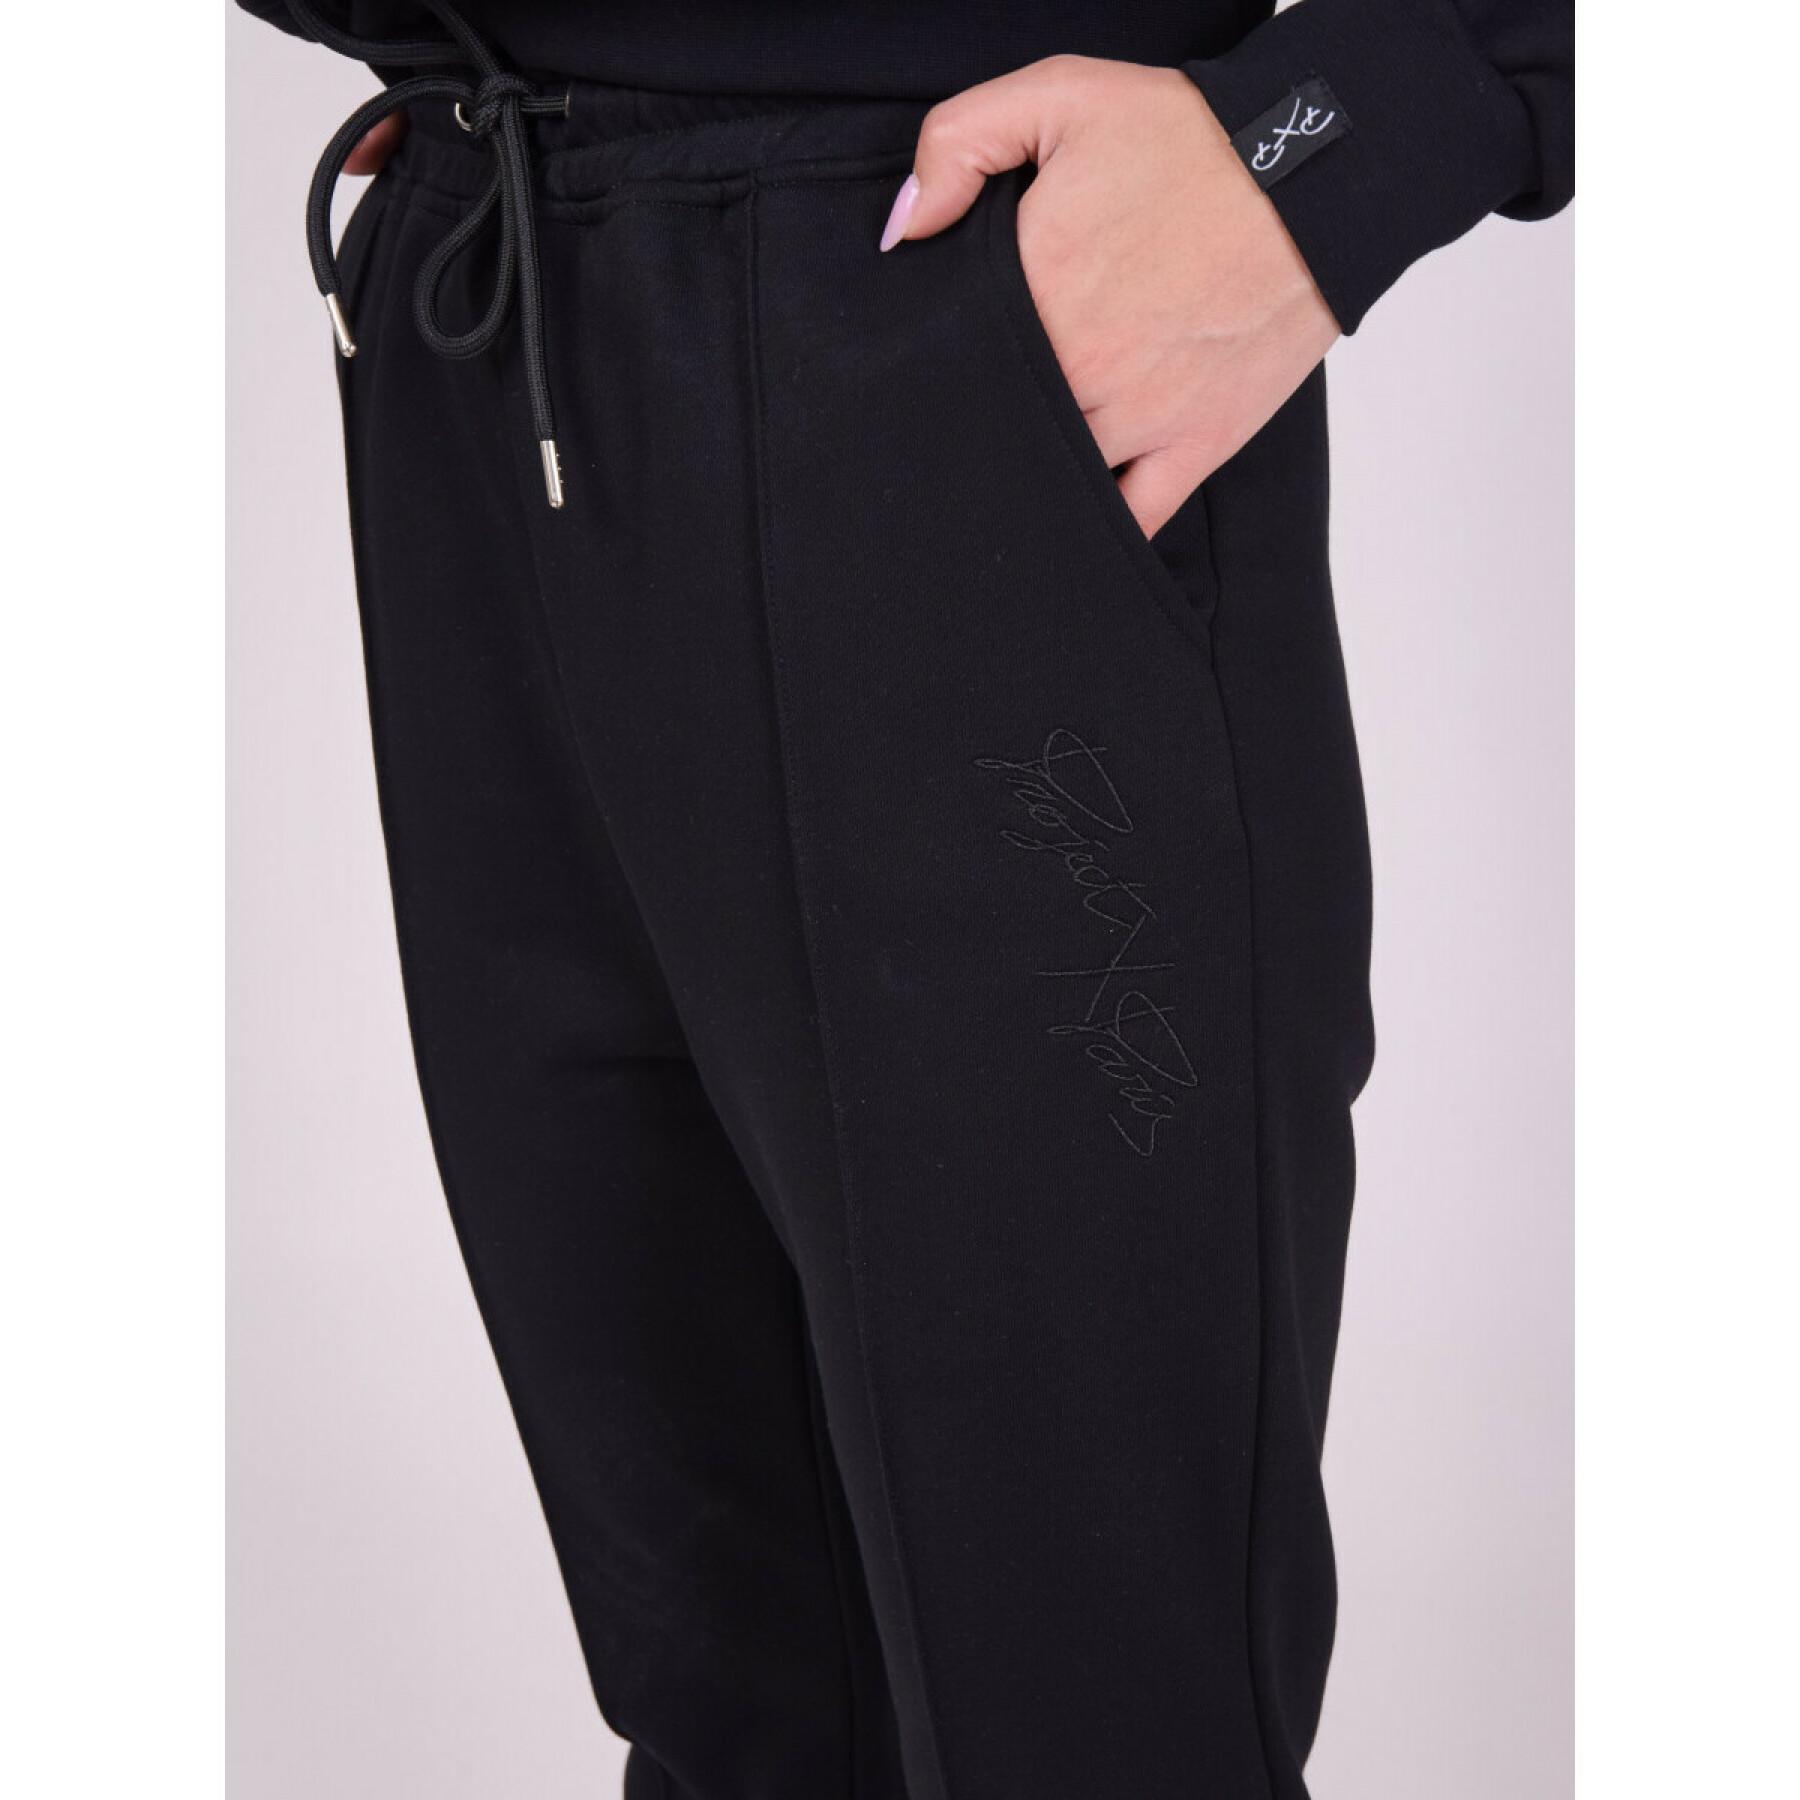 Women's tone-on-tone logo embroidery jogging suit Project X Paris